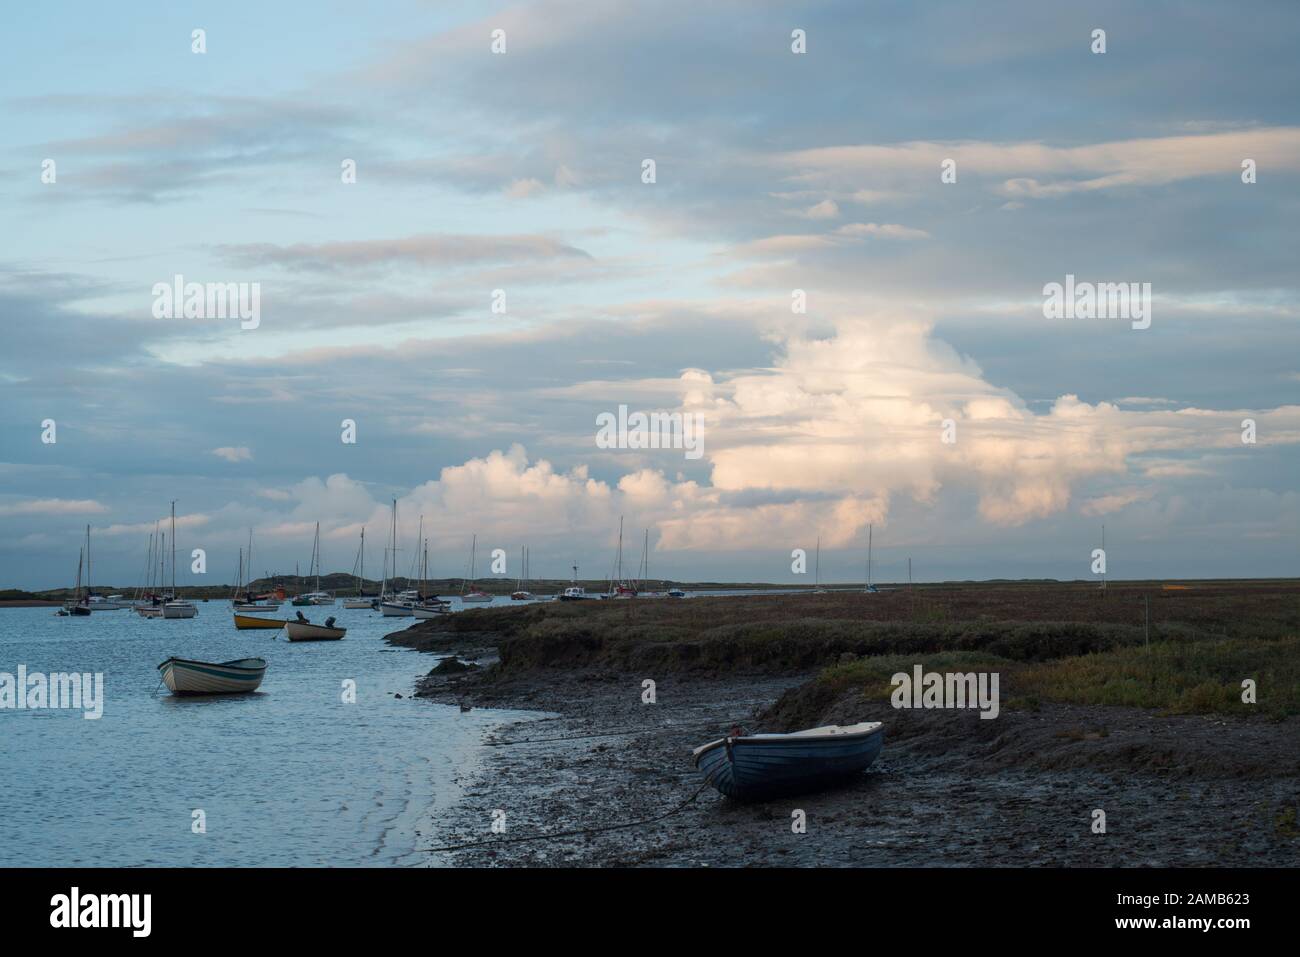 Am frühen Abend im Brancaster Staithes in North Norfolk mit Blick auf das Meer mit Jachten und einem Hintergrund von sonnigen Wolken und hellblauem Himmel Stockfoto